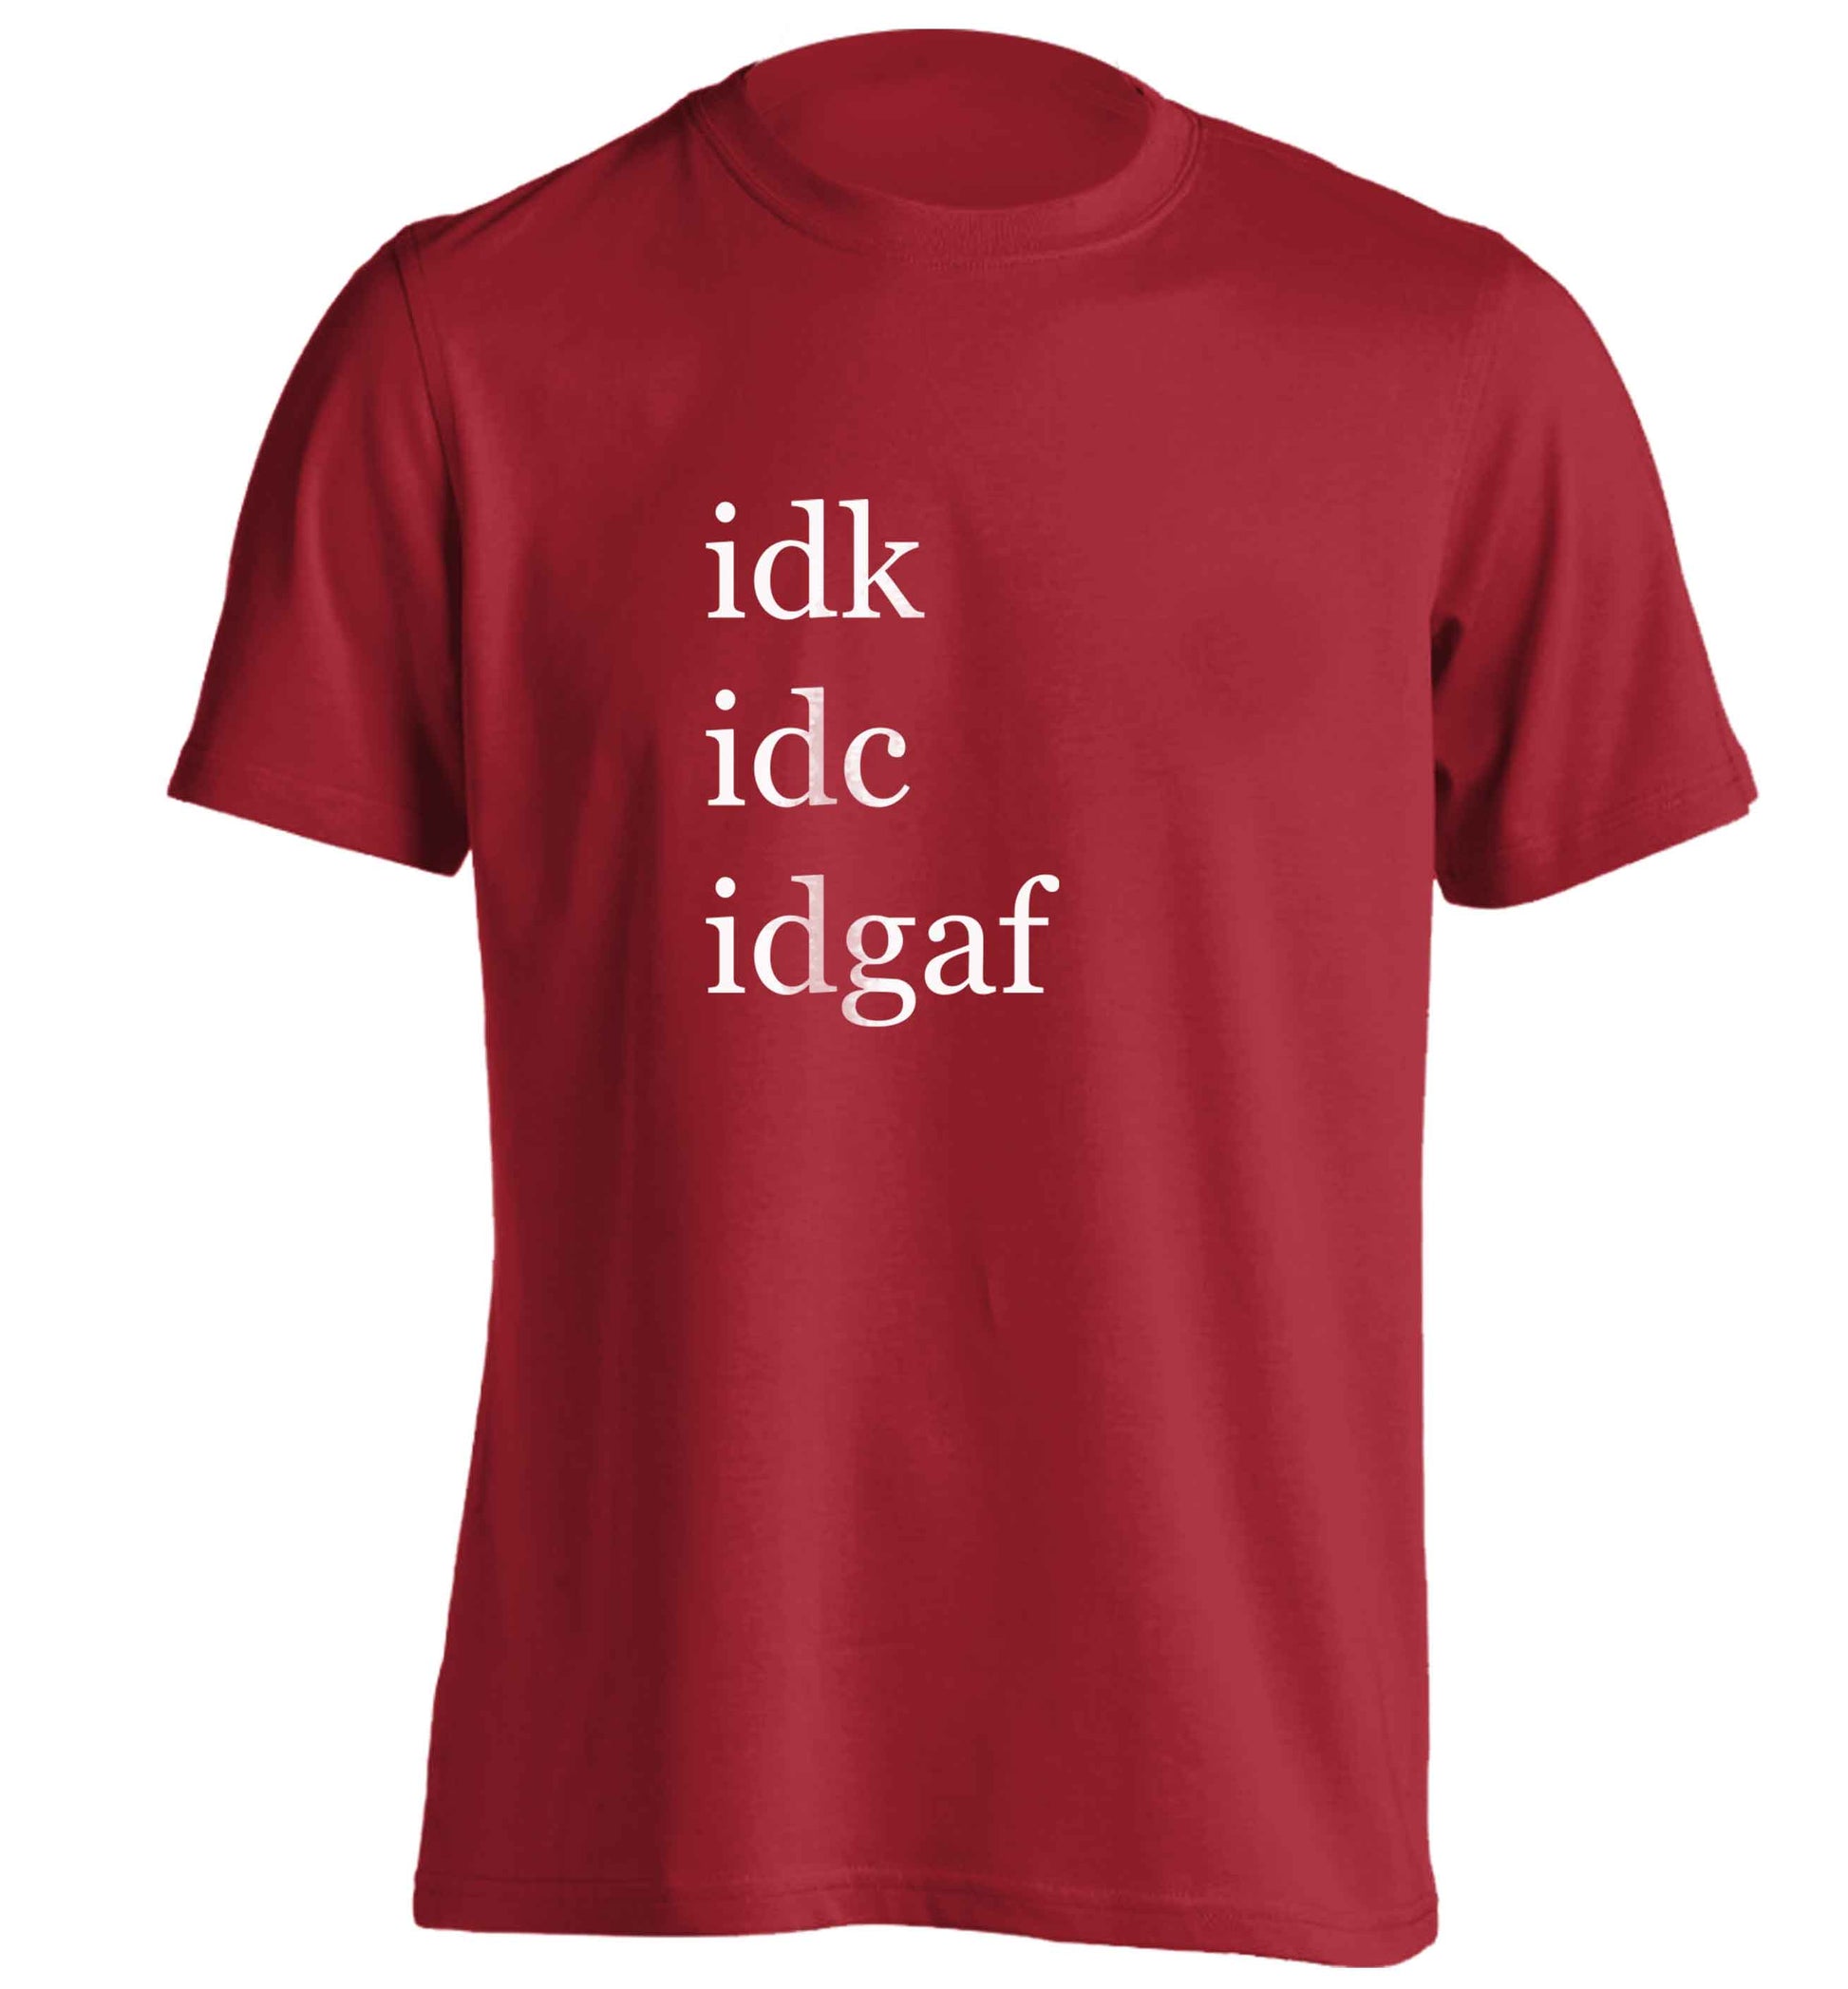 Idk Idc Idgaf adults unisex red Tshirt 2XL